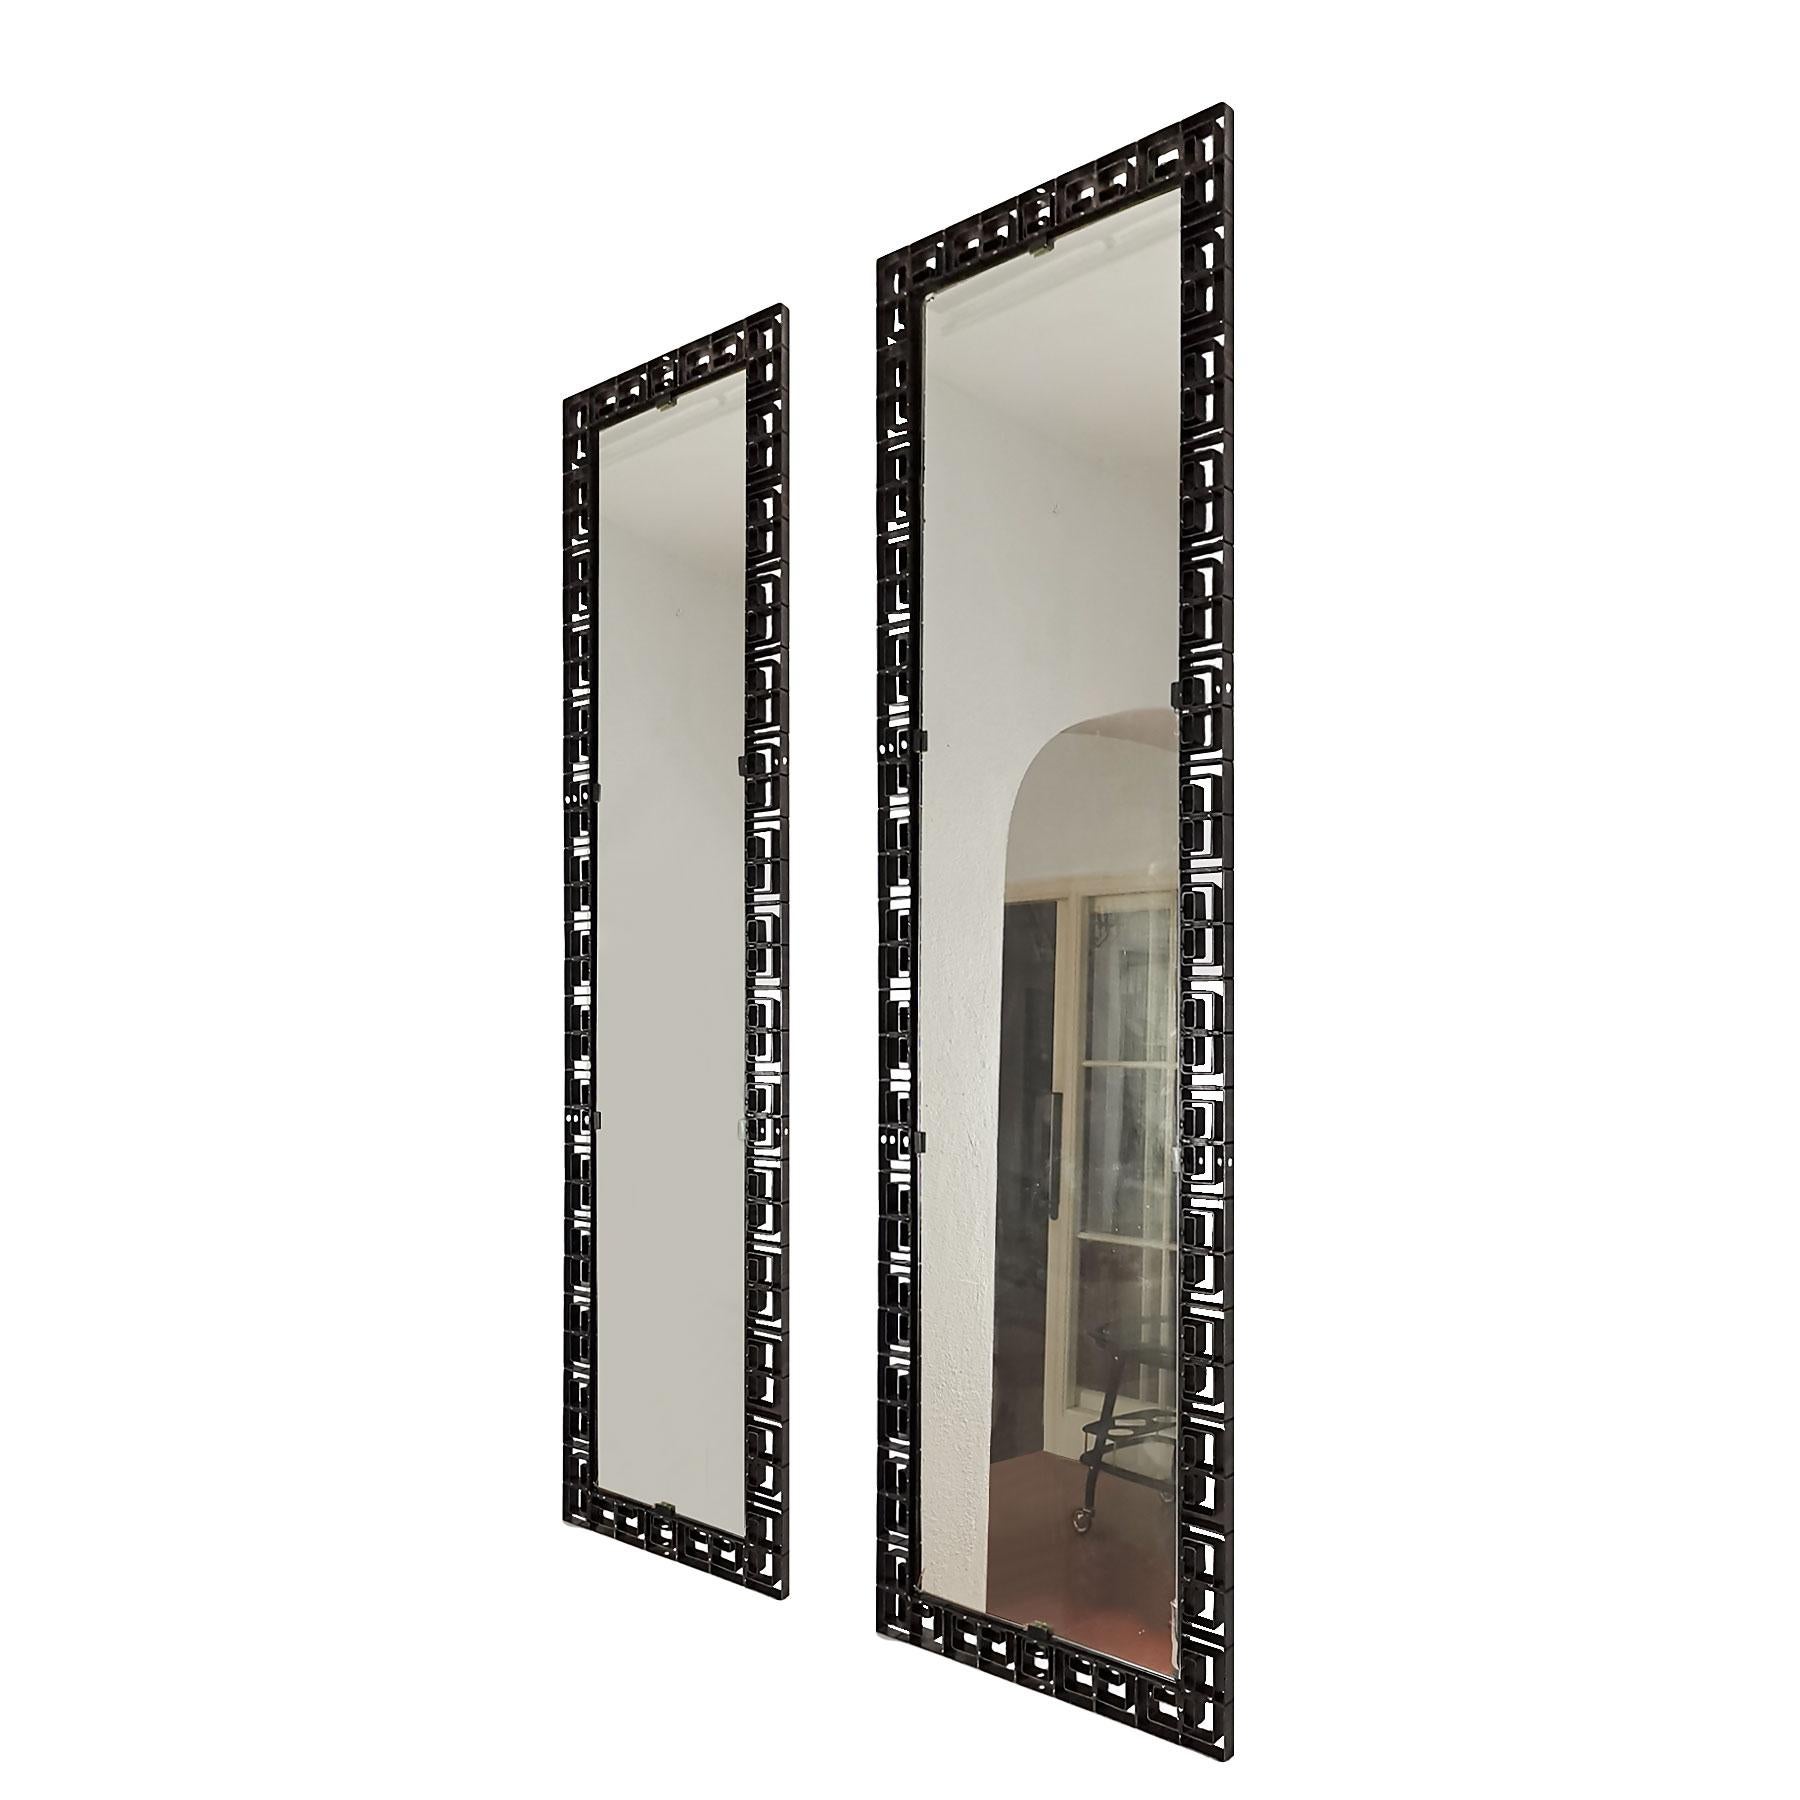 Fausse paire de miroirs, en fer forgé avec cadre patiné noir, d'excellente qualité. Un grand avec le miroir d'origine, quelques pertes (possibilité de le changer) et l'autre est un miroir neuf.
Italie, vers 1960

Mesures : Grand miroir 49 x 2 x